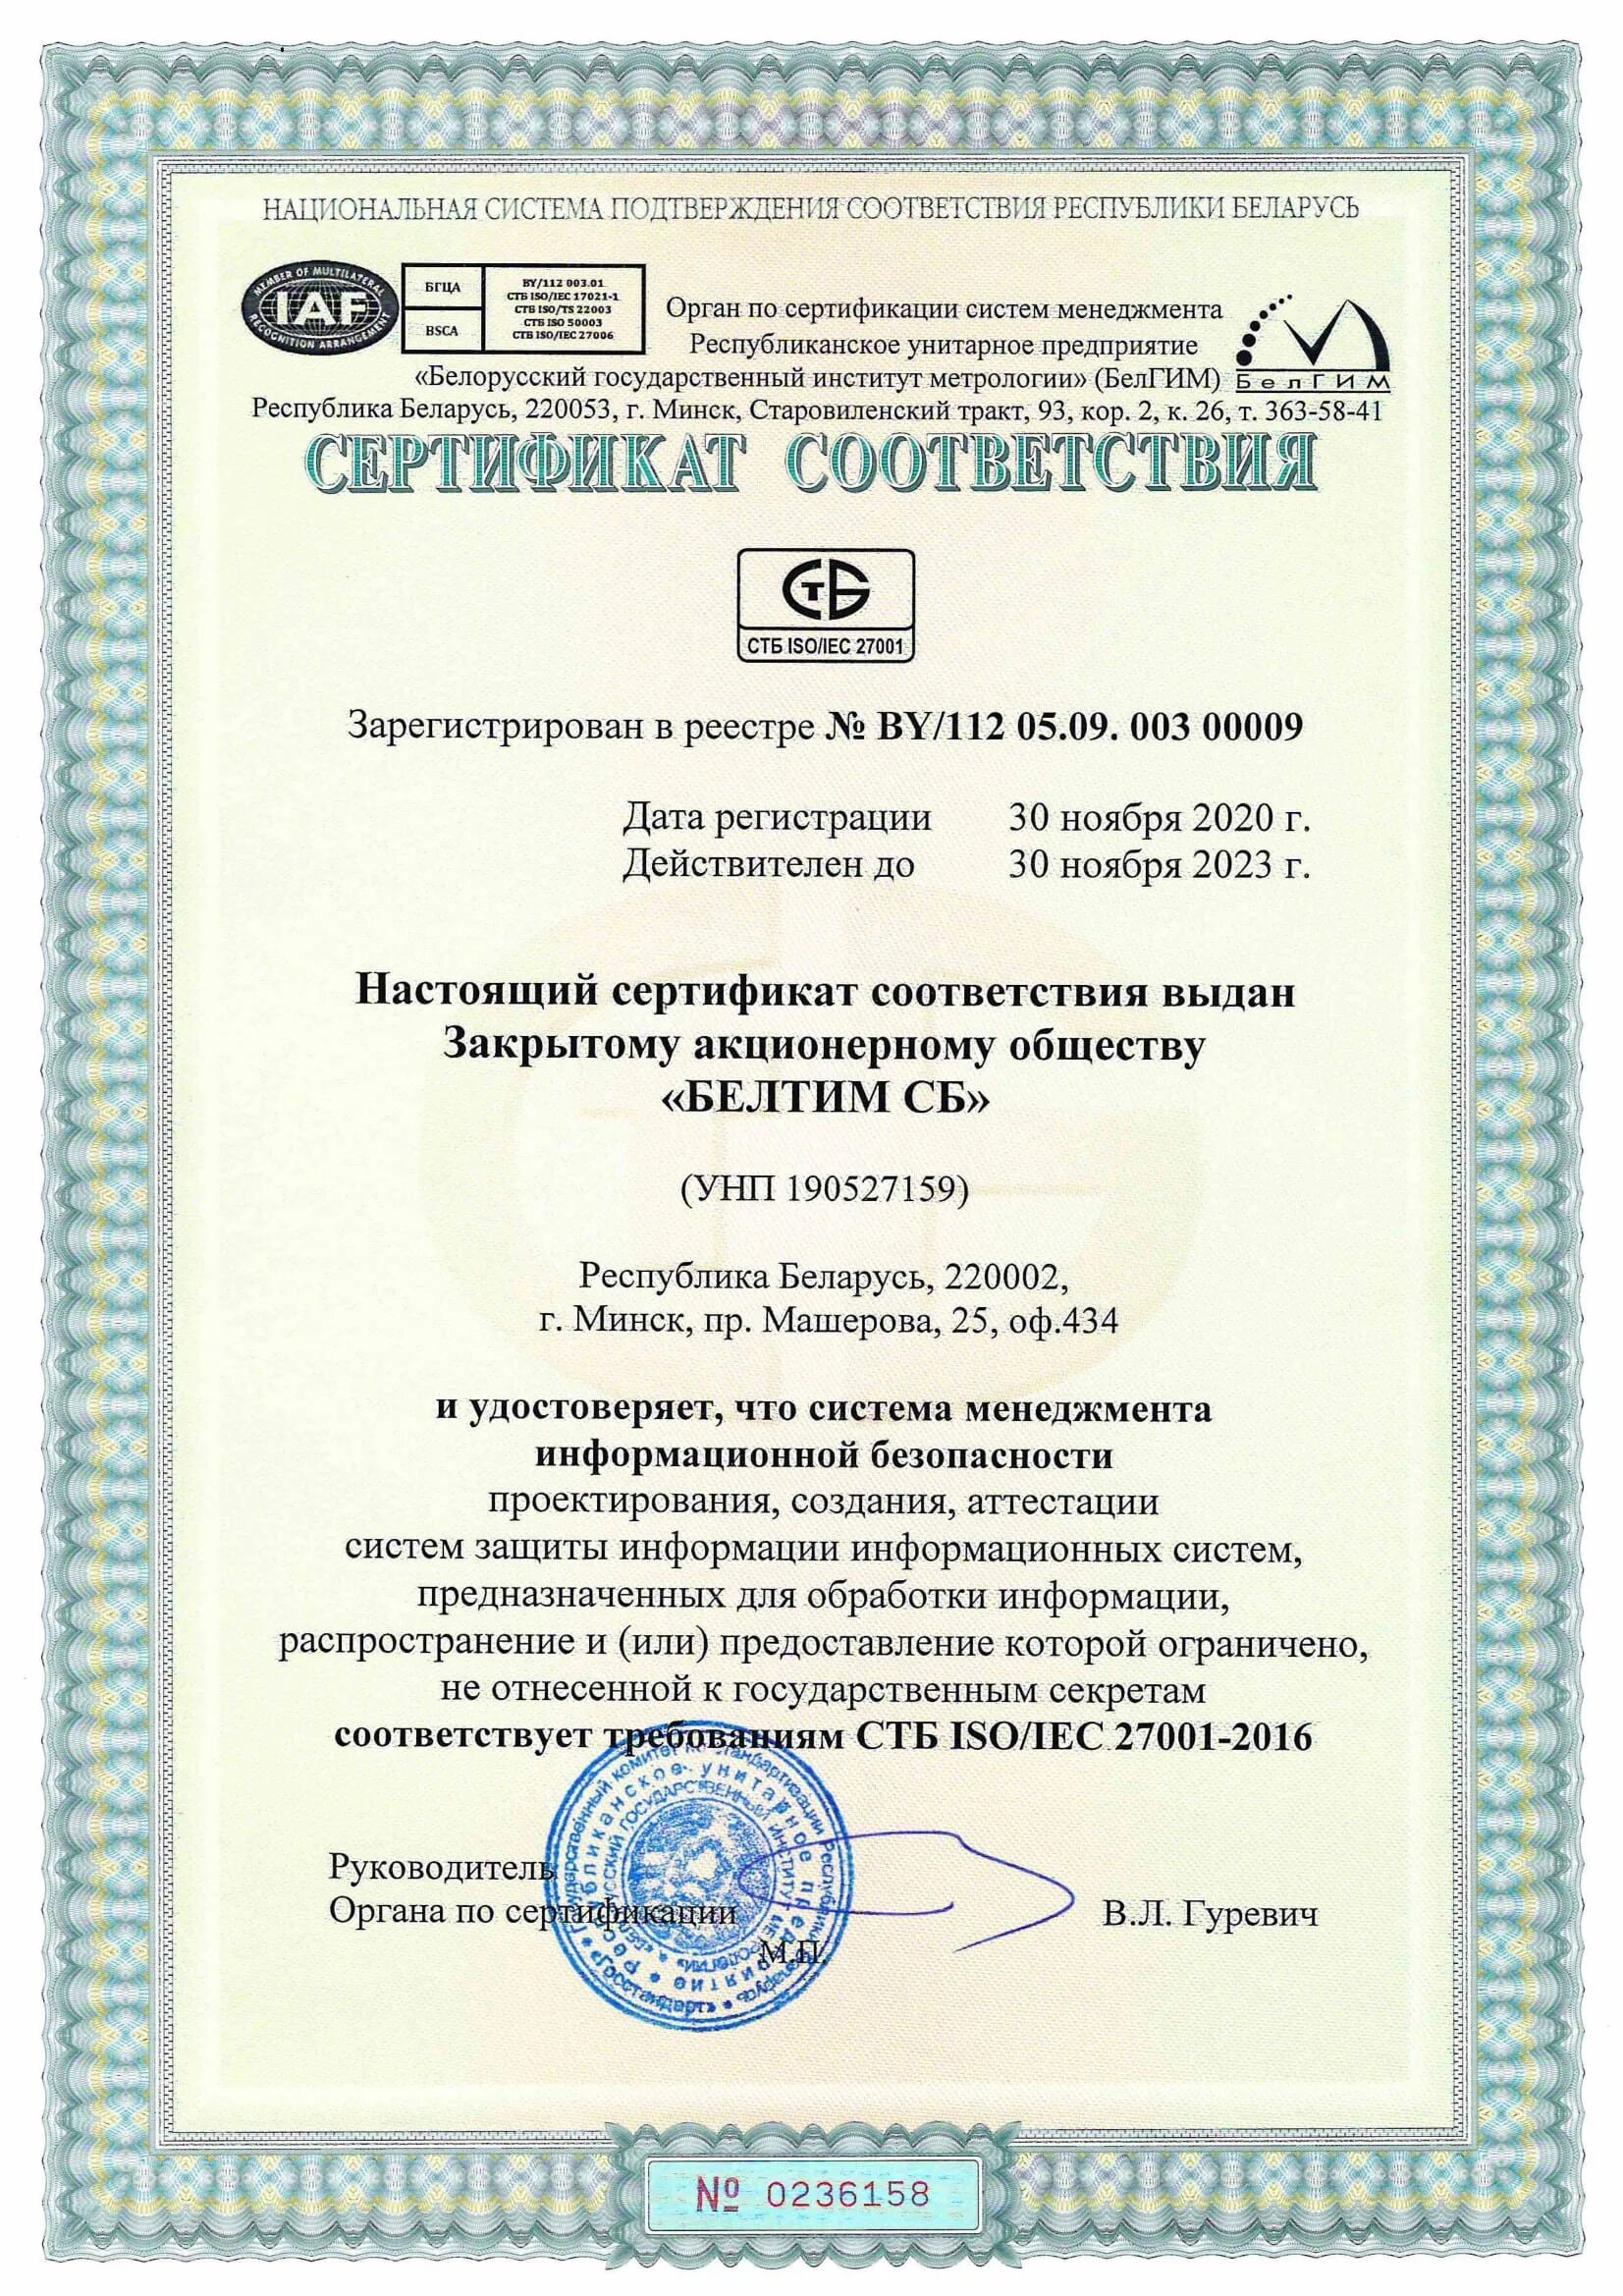 Сертификат соответствия ISO/IEC 27001.. Сертификат соответствия на требования ISO/IEC 27001. Сертификатом соответствия требованиям СТБ ISO 900. Сертификат Беларусь. Сертификаты ис